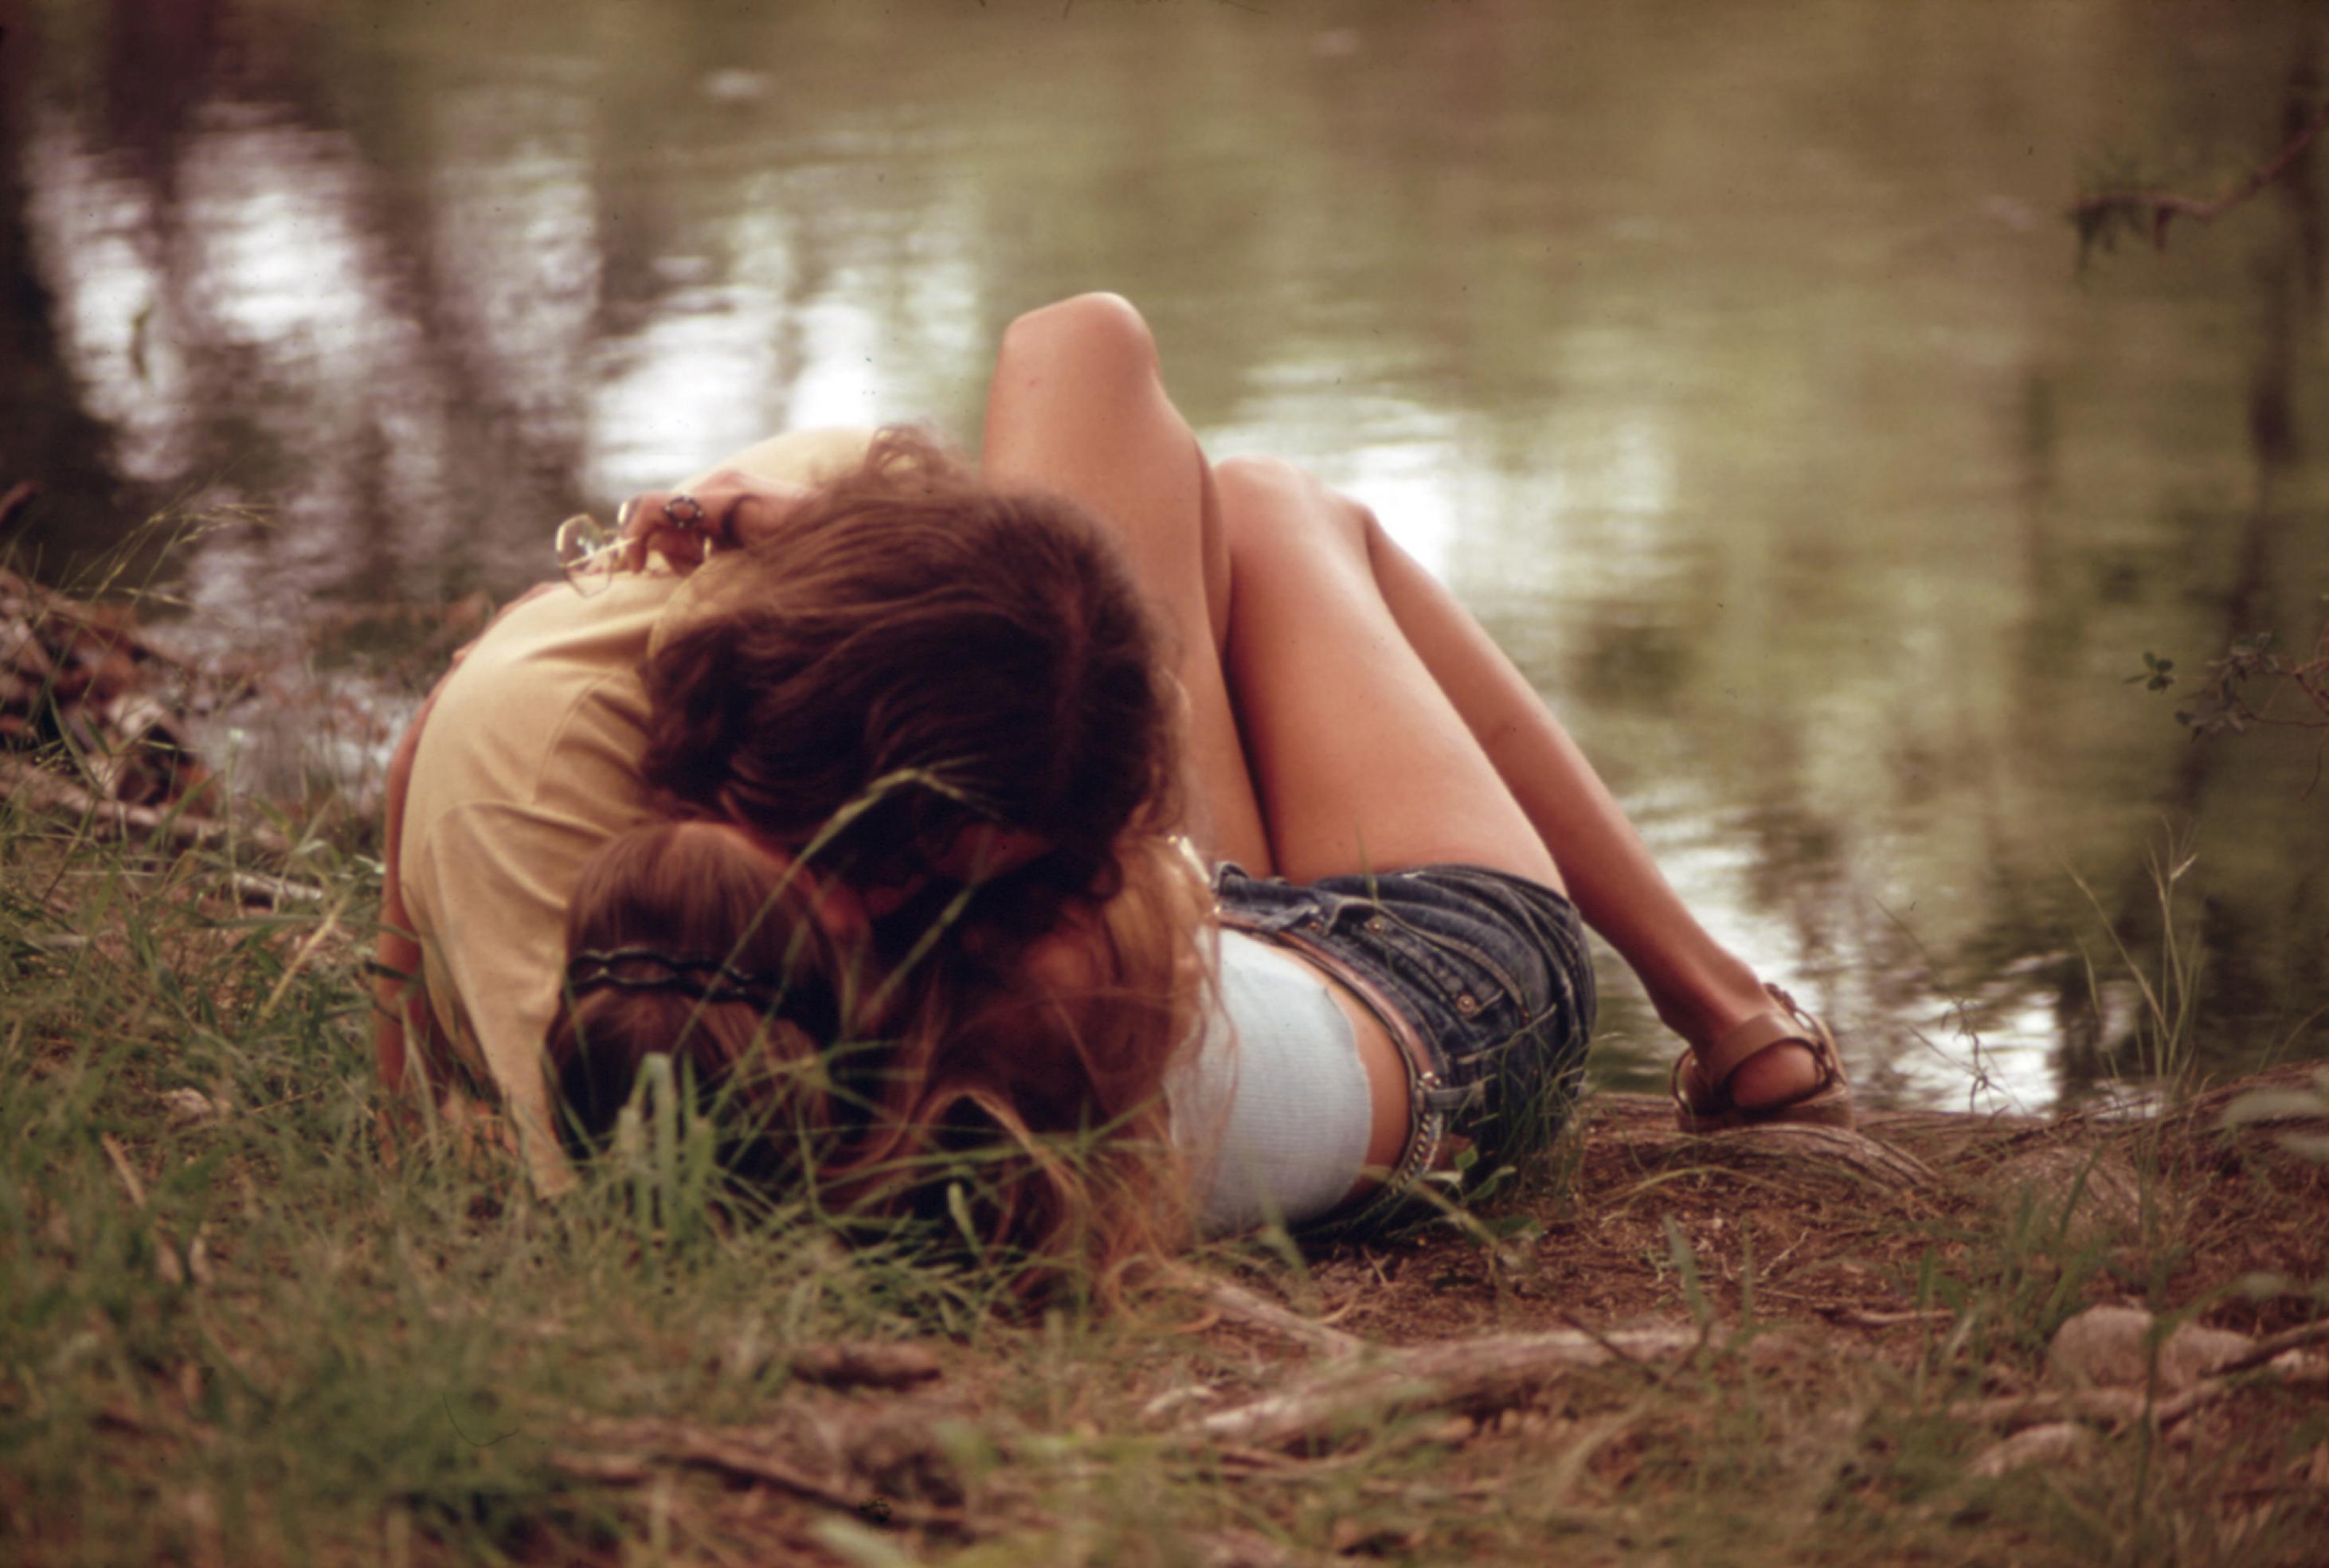 An einem sommerlichen Seeufer zwischen Gras liegt ein Paar junger Menschen, sich innig küssend. Er hat sich über sie gebeugt, man sieht fast nur seine dichten braunen Haare. Sie liegt, mit hellem Top und kurzer Hose bekleidet, auf dem Rücken und umarmt ihn.